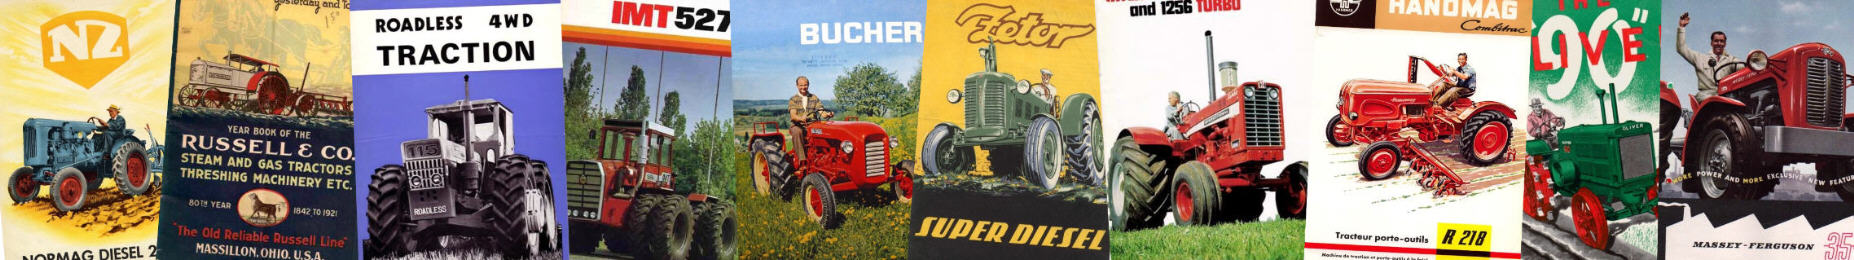 Tractor brochure